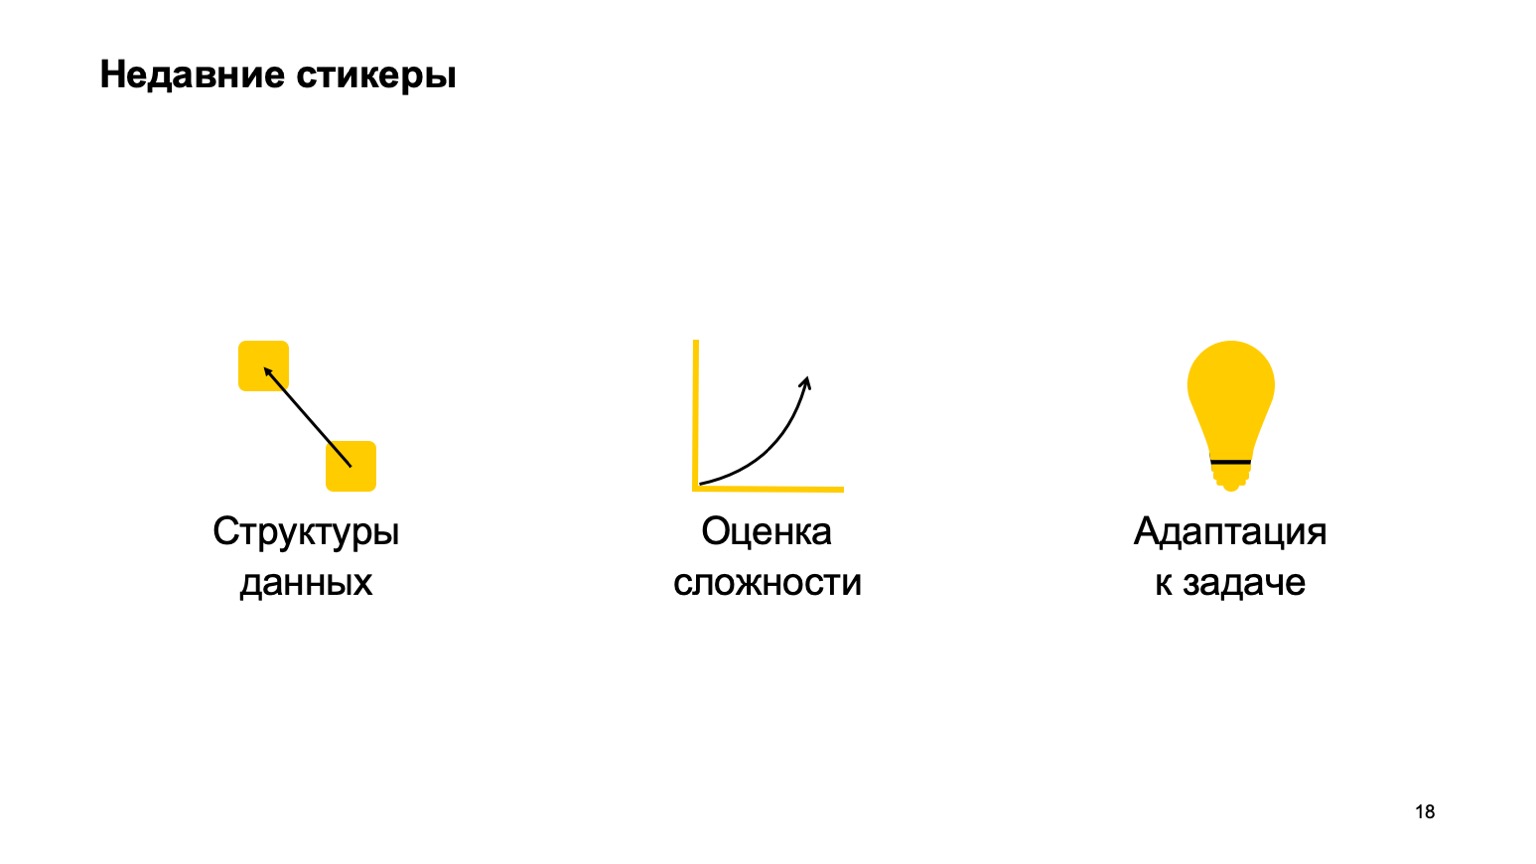 Мобильная разработка — это просто и скучно? Доклад Яндекса - 17